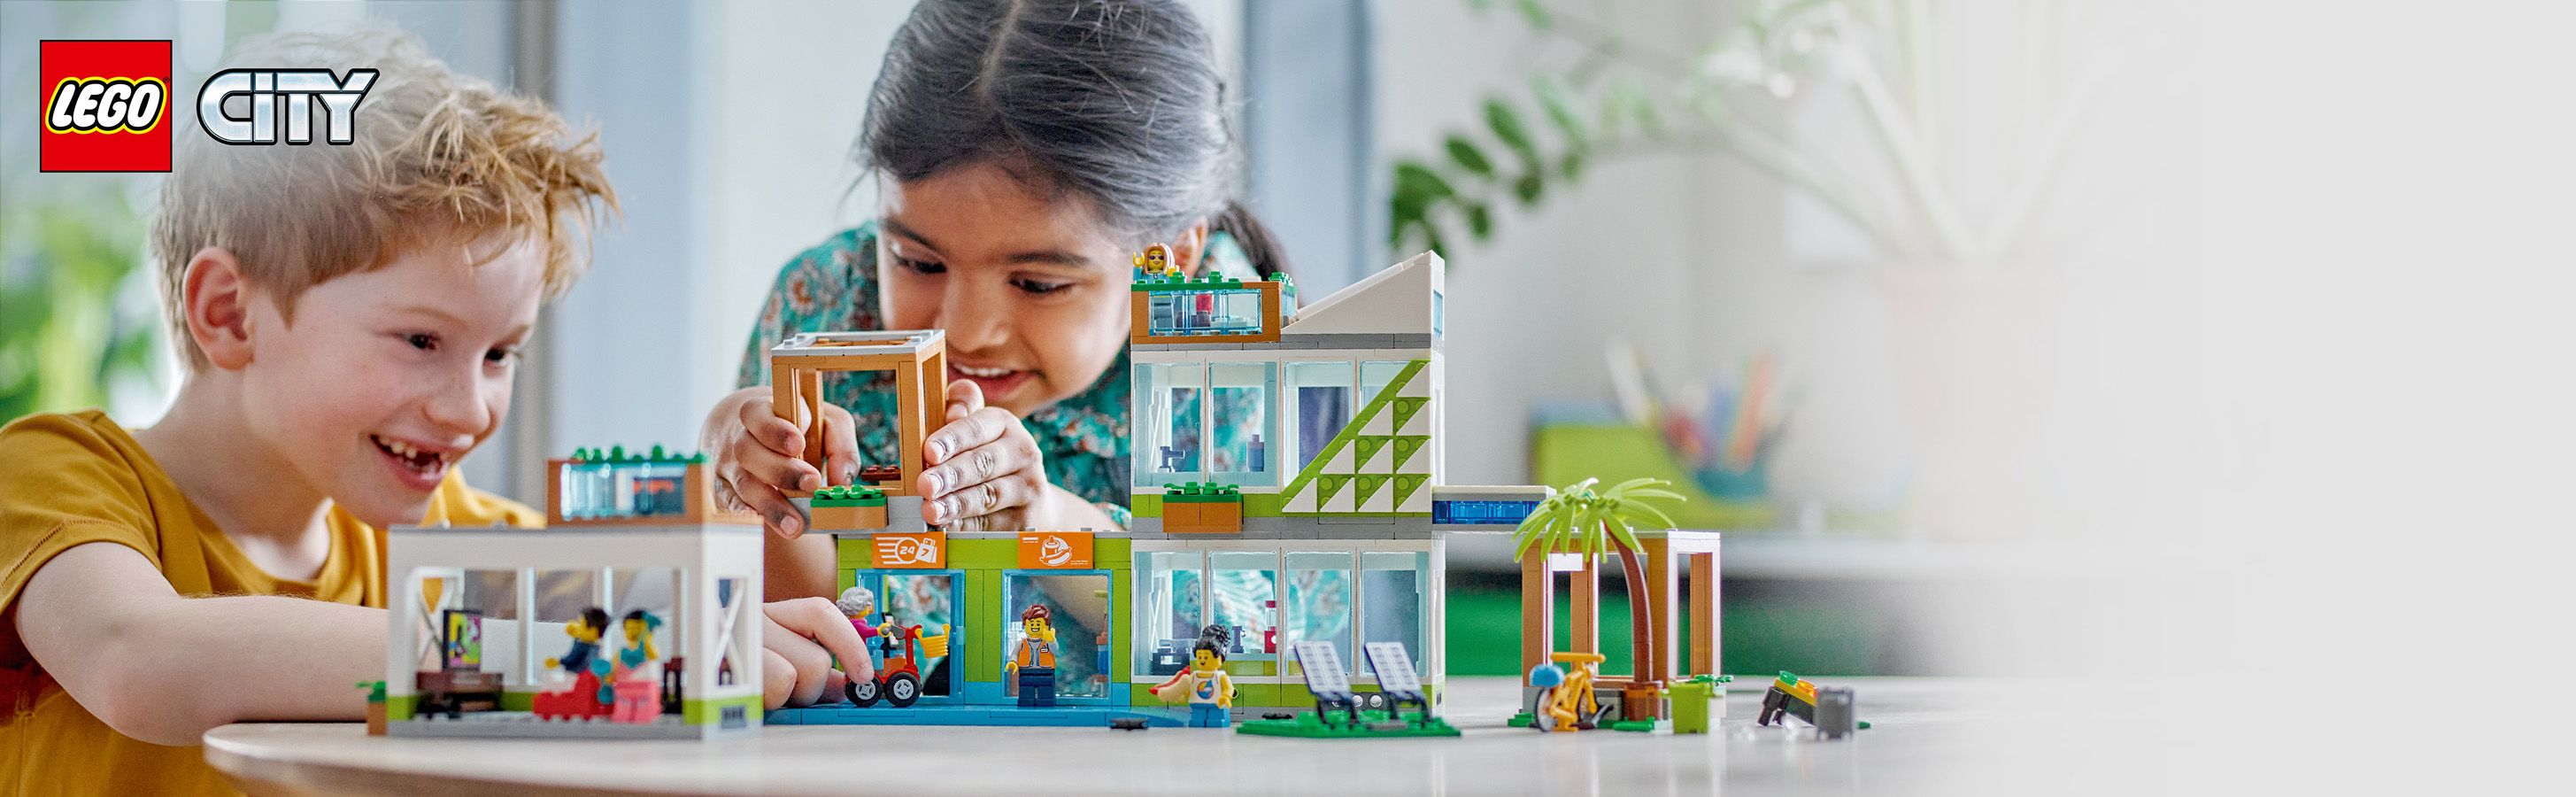 Městský bytový komplex pro děti